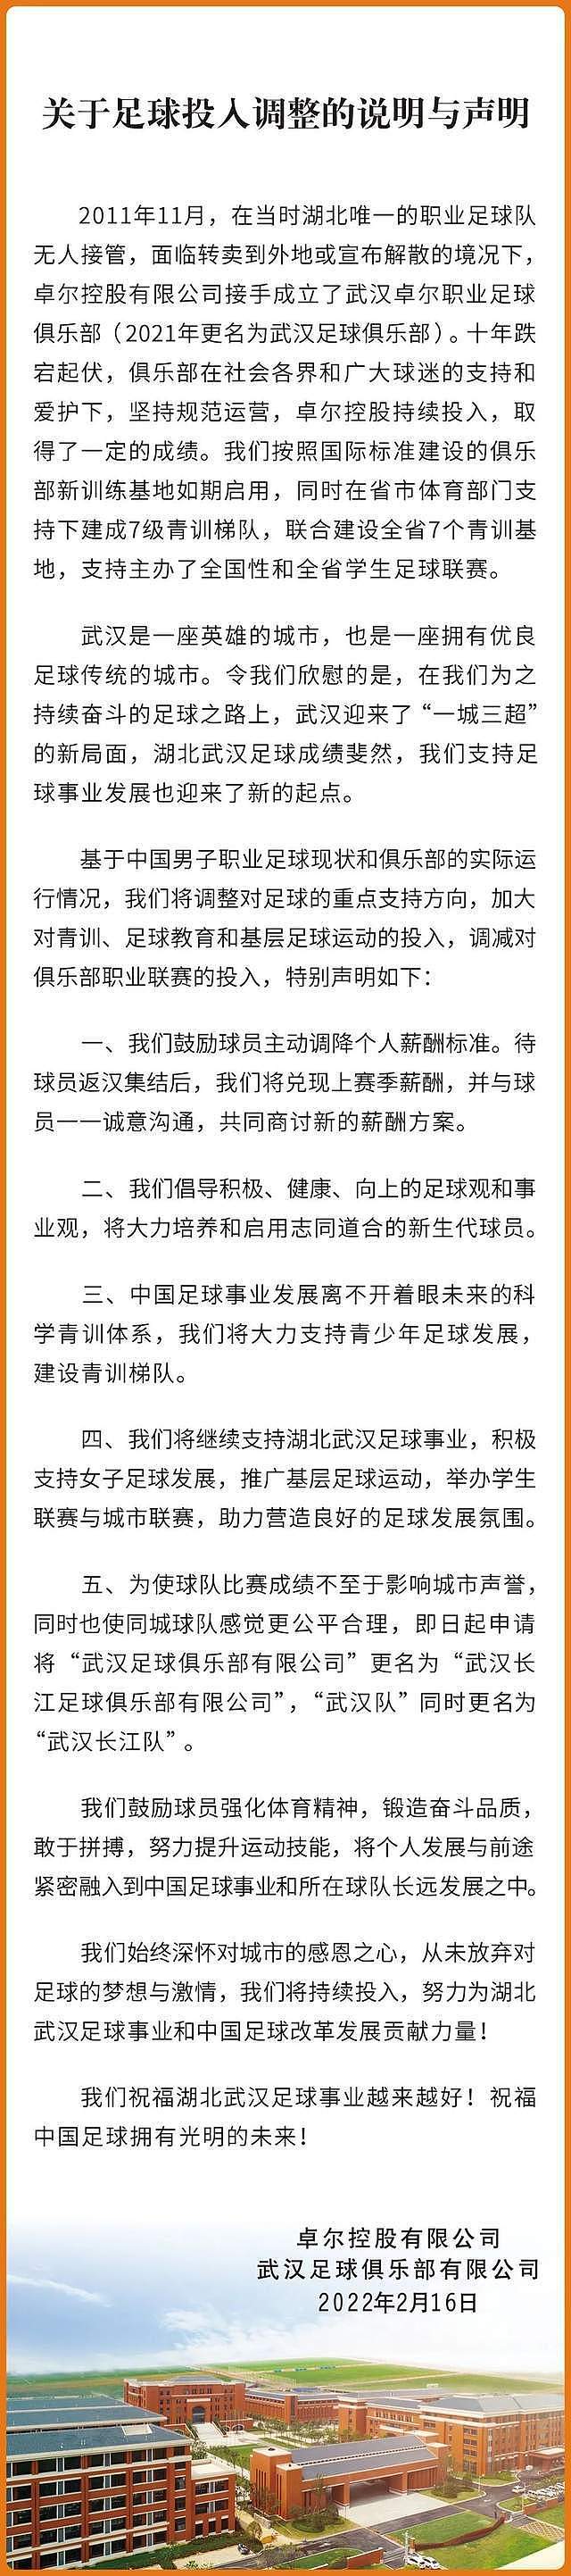 奇葩!武汉队:为使比赛成绩不影响城市声誉 申请更名为武汉长江队 - 3